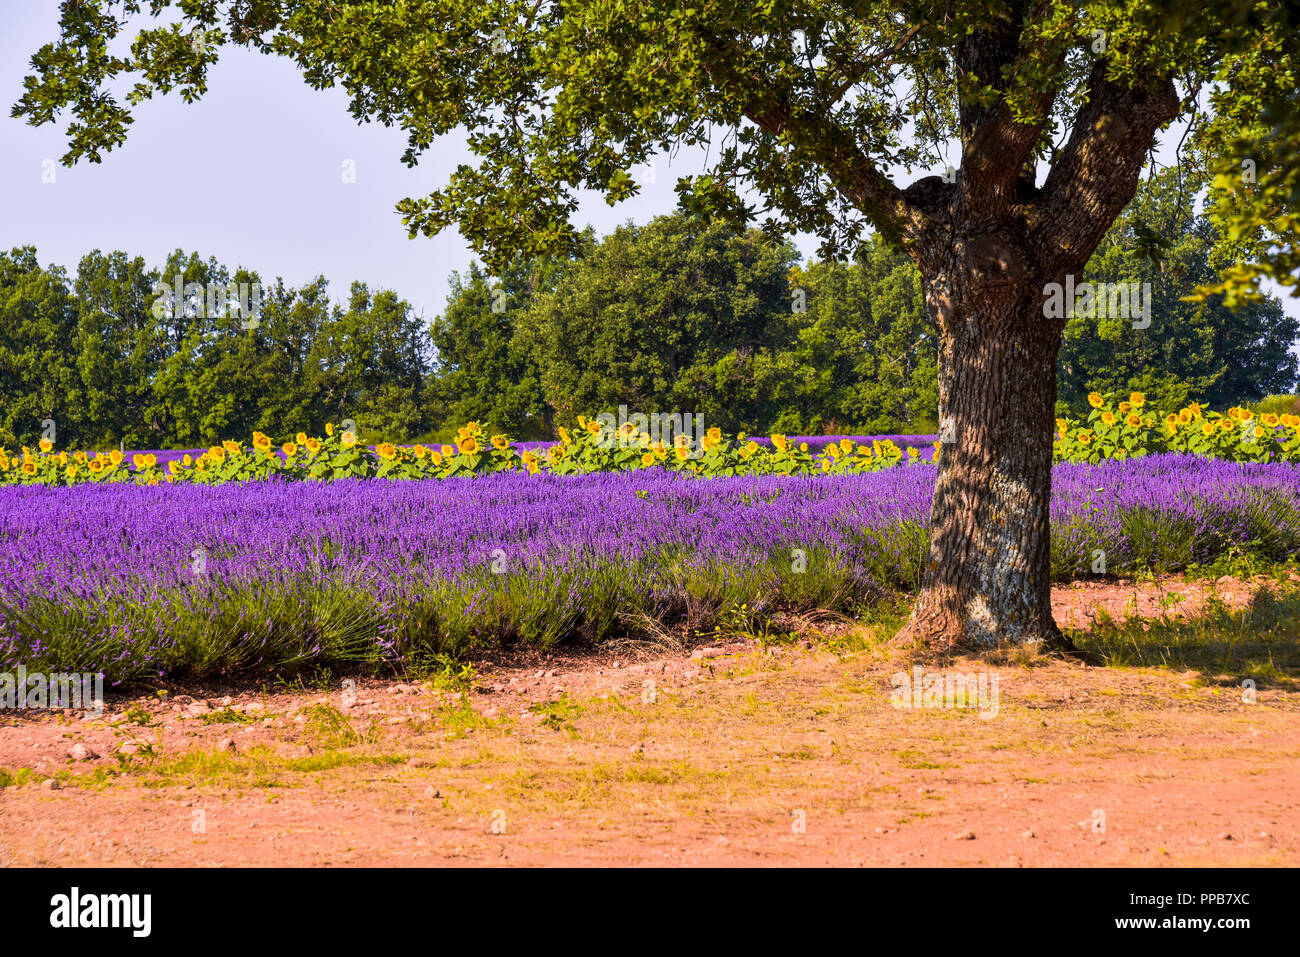 lavender fields with sunflowers and tree, Provence, France, landscape near Sainte-Croix-du-Verdon, department Alpes-de-Haute-Provence Stock Photo